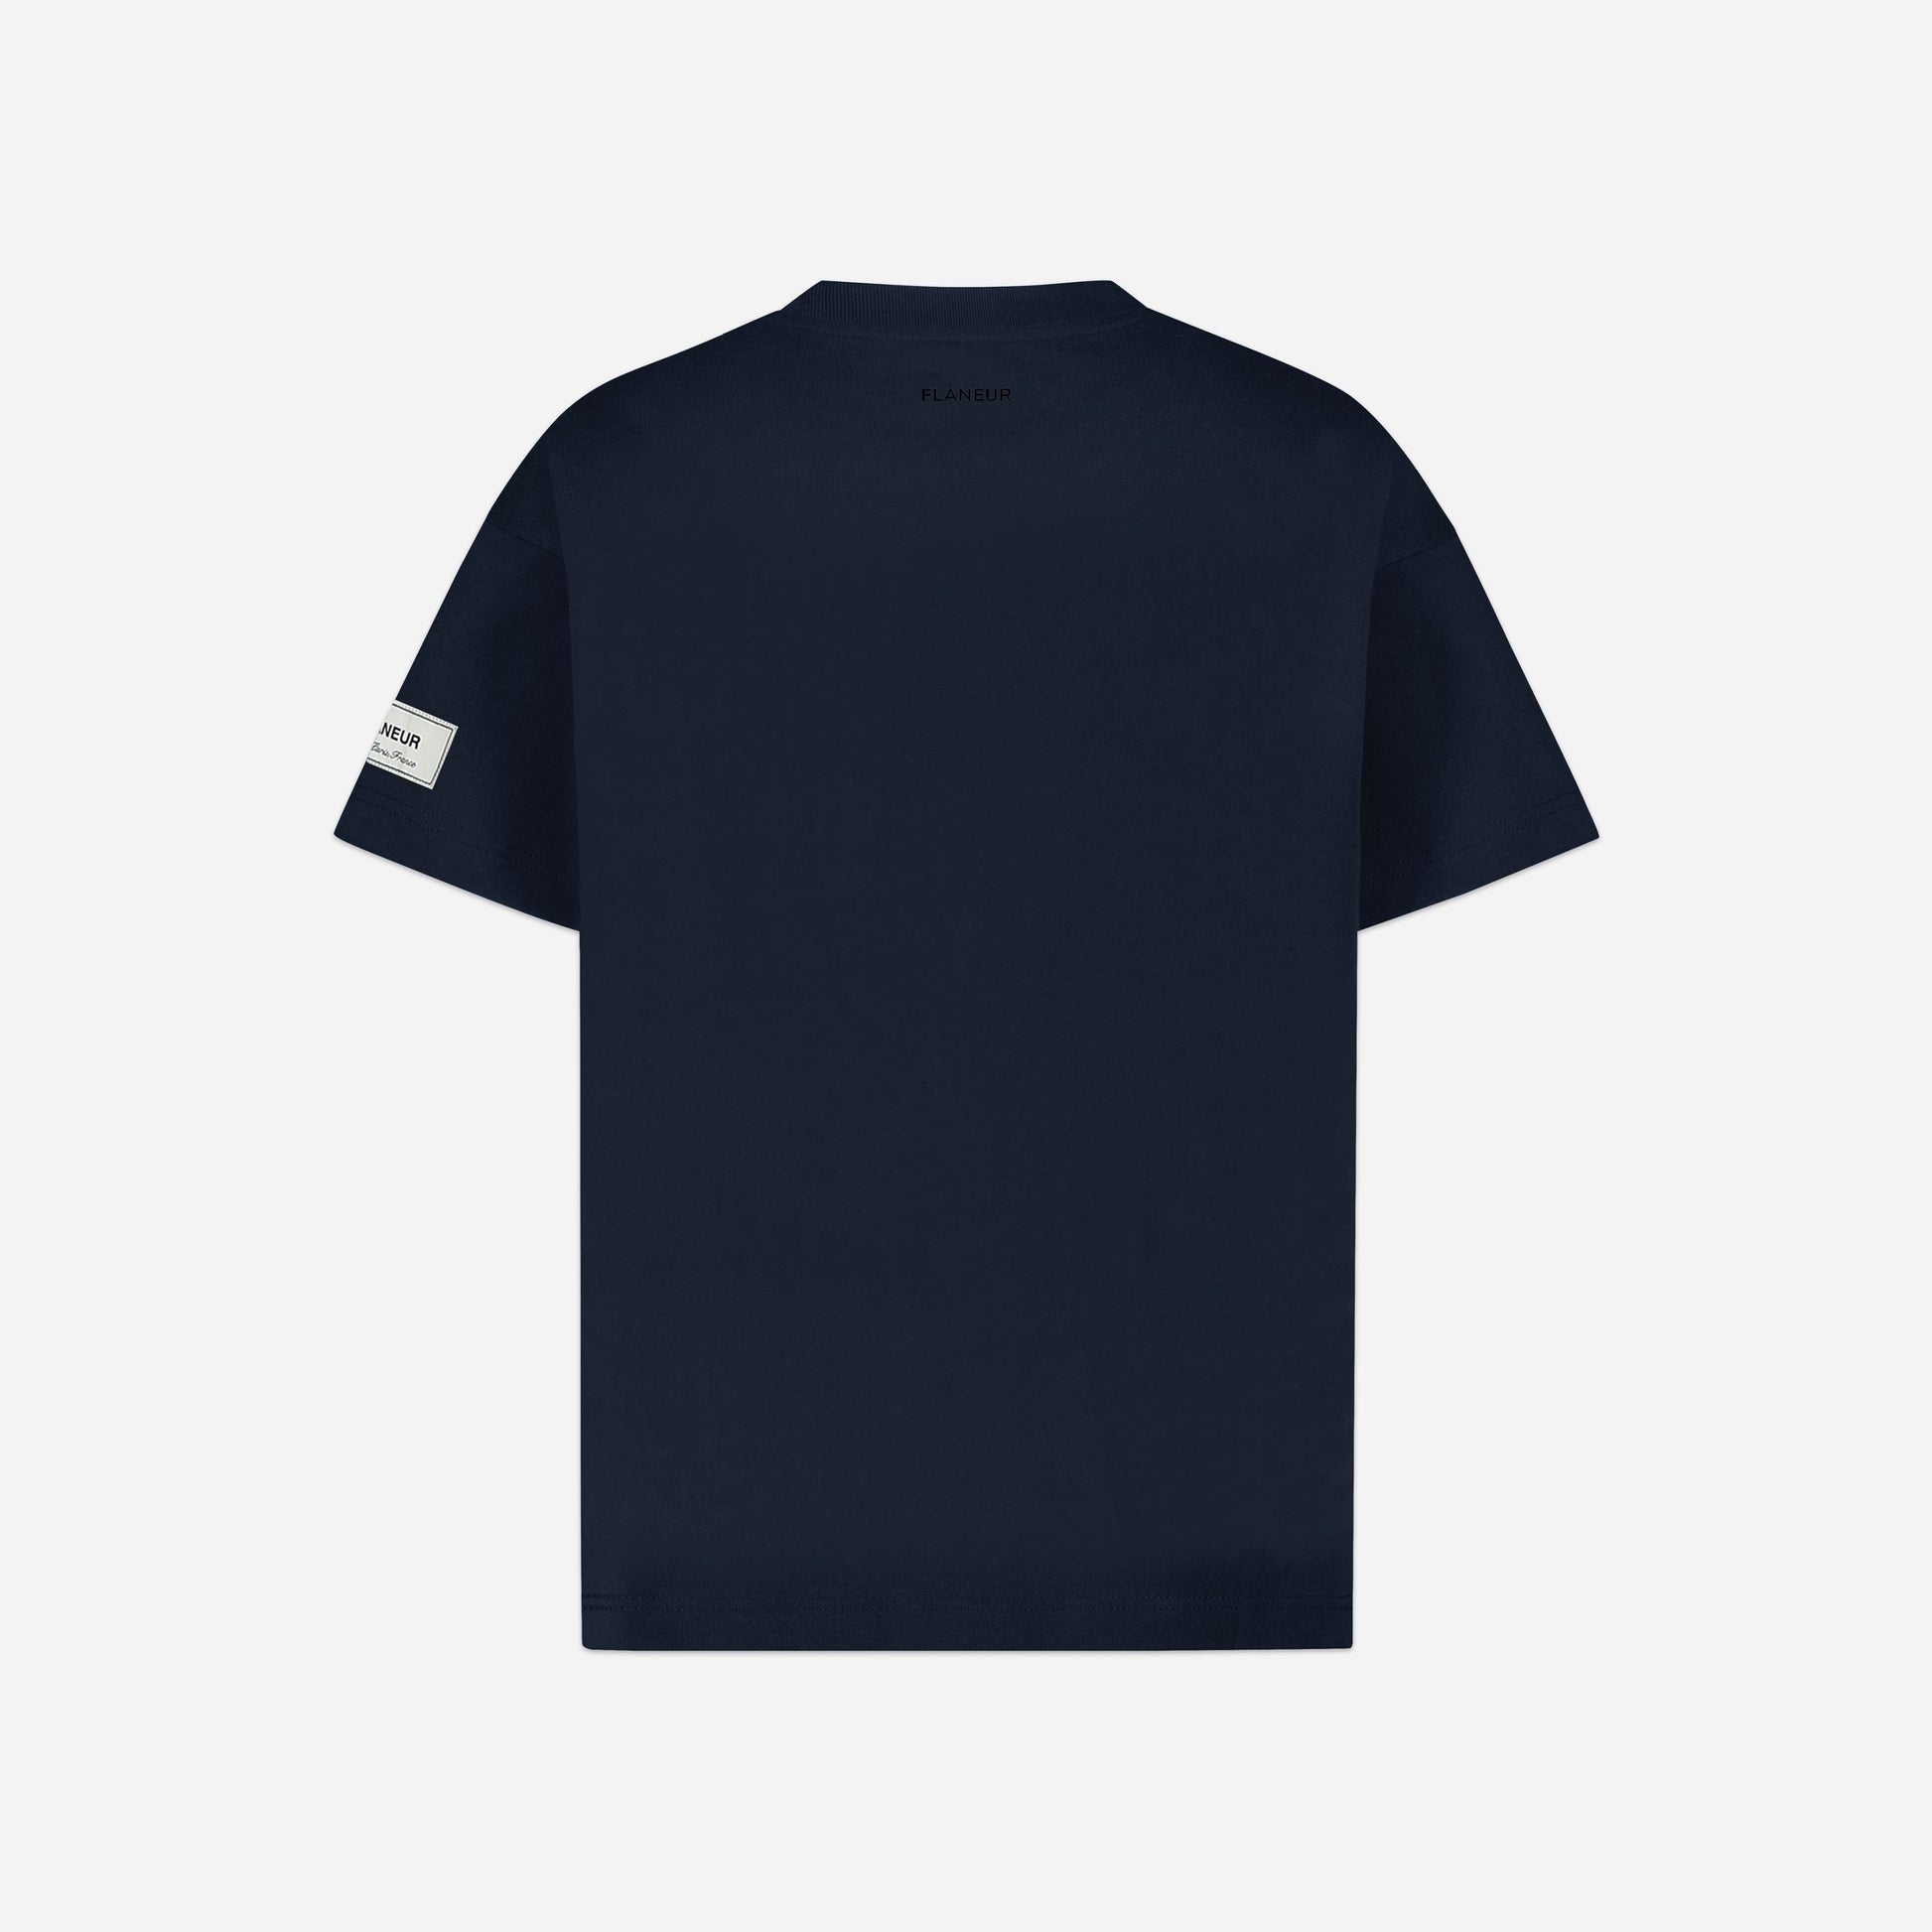 Atelier T-shirt Sleeve Emblem Navy